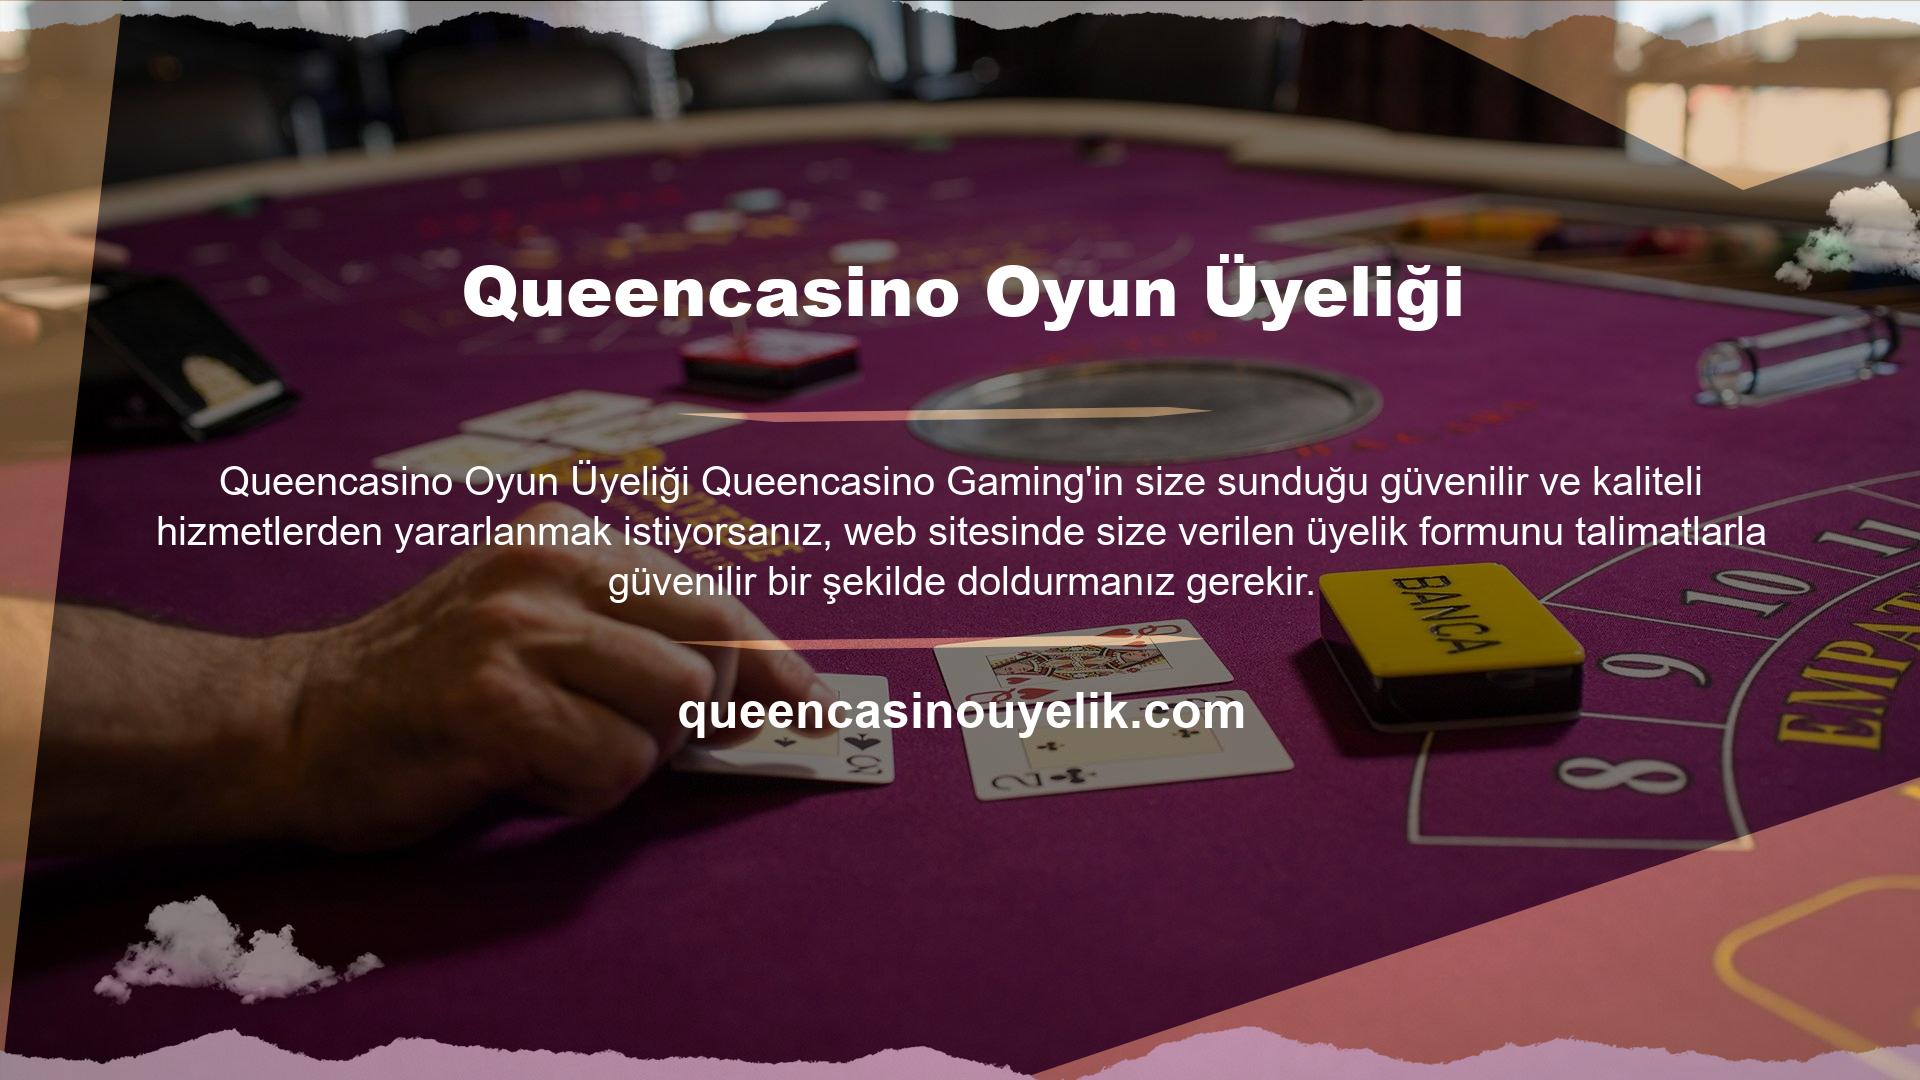 Queencasino üyelik formu sizden kişisel ve hesap bilgilerinizi vermenizi ister